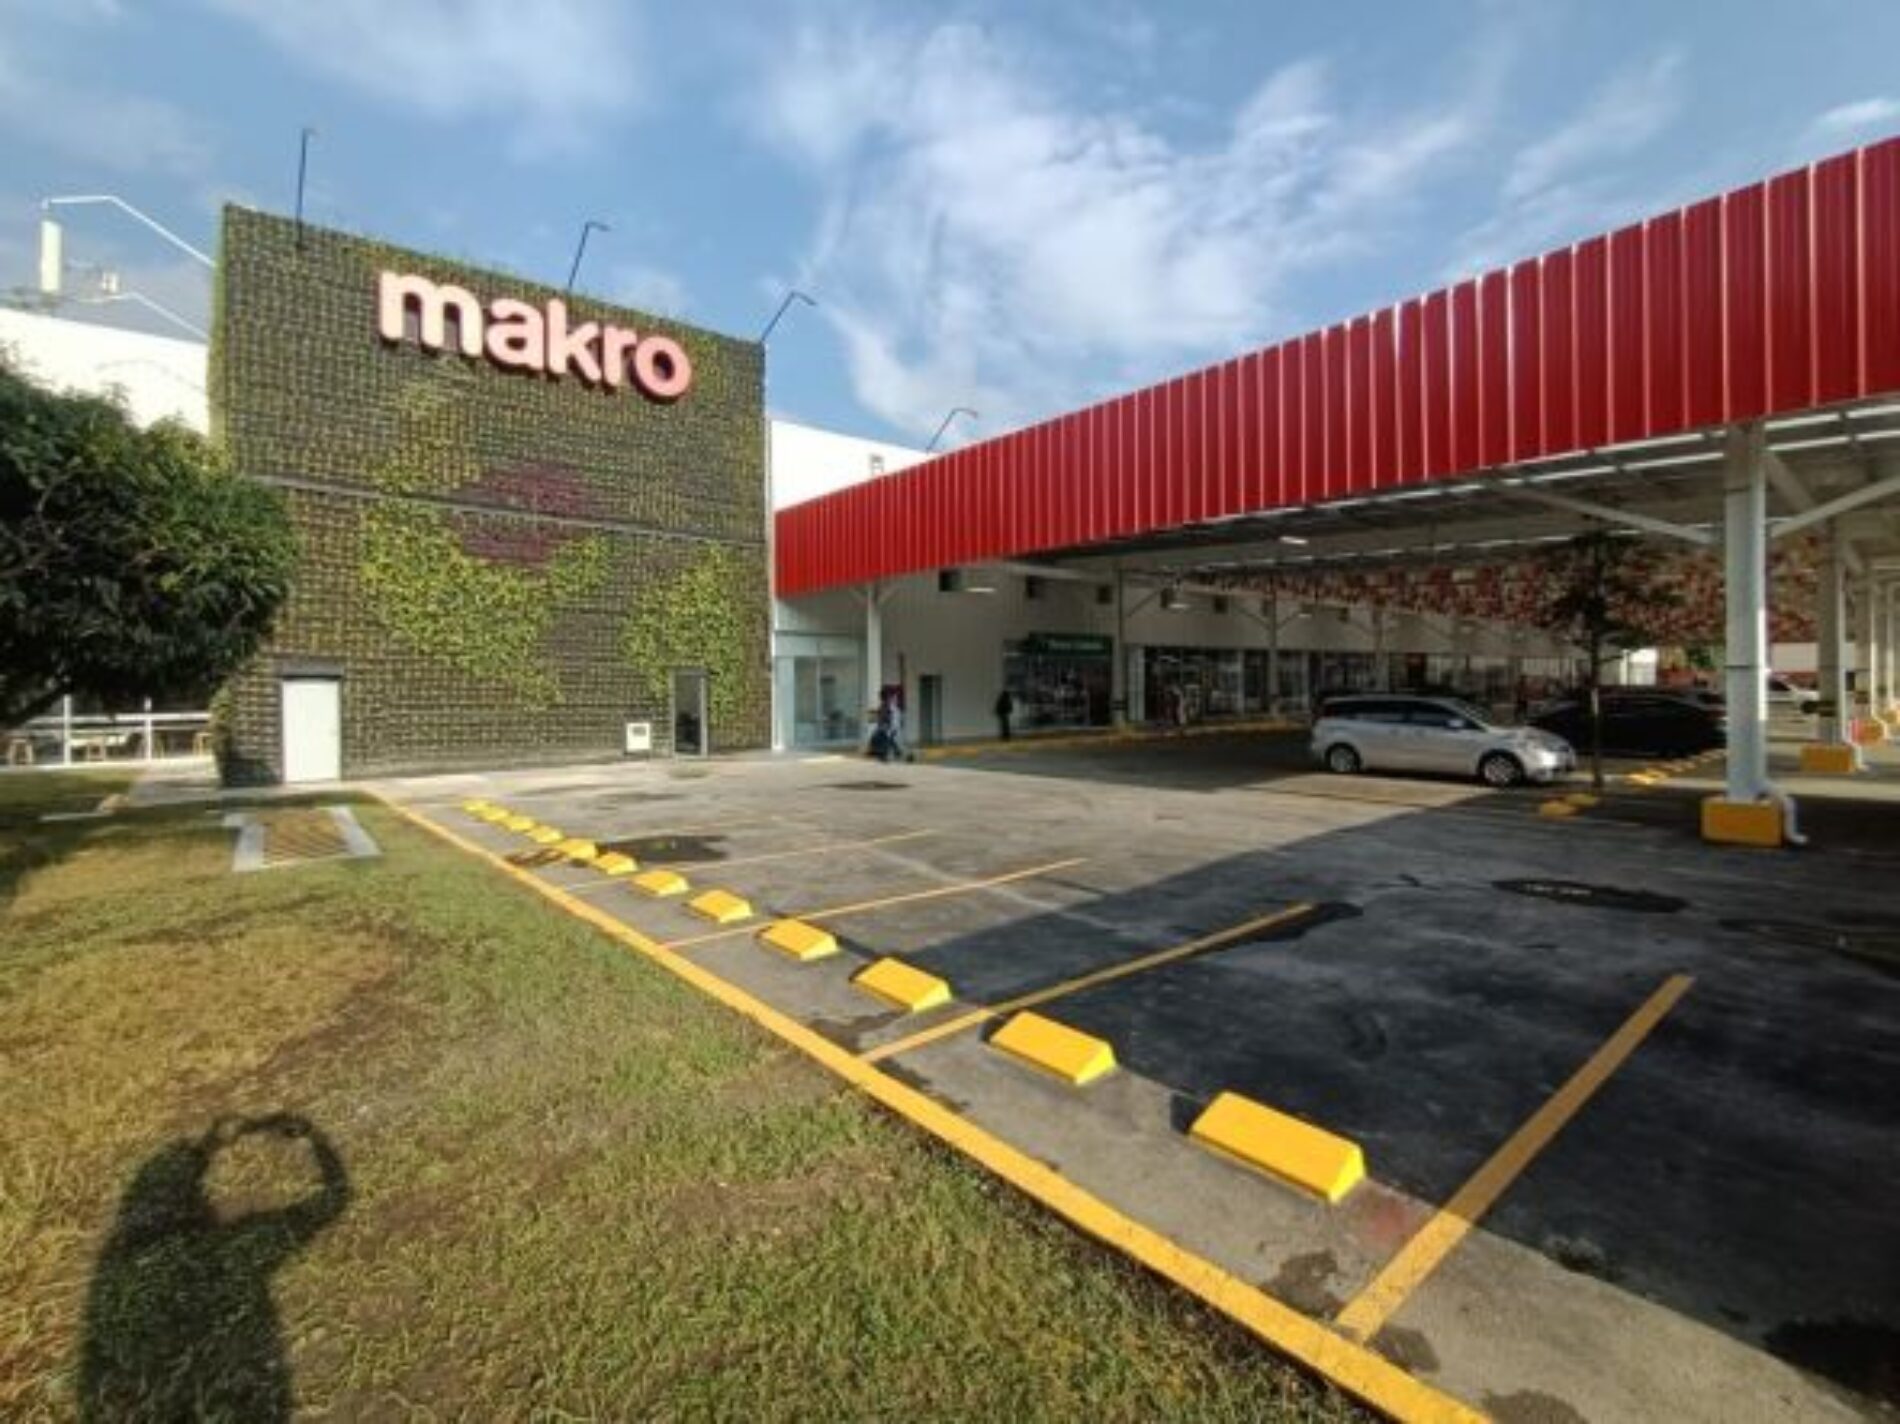 La tienda Makro San Juan en Medellín se renovó para mejorar la experiencia de compra de sus clientes